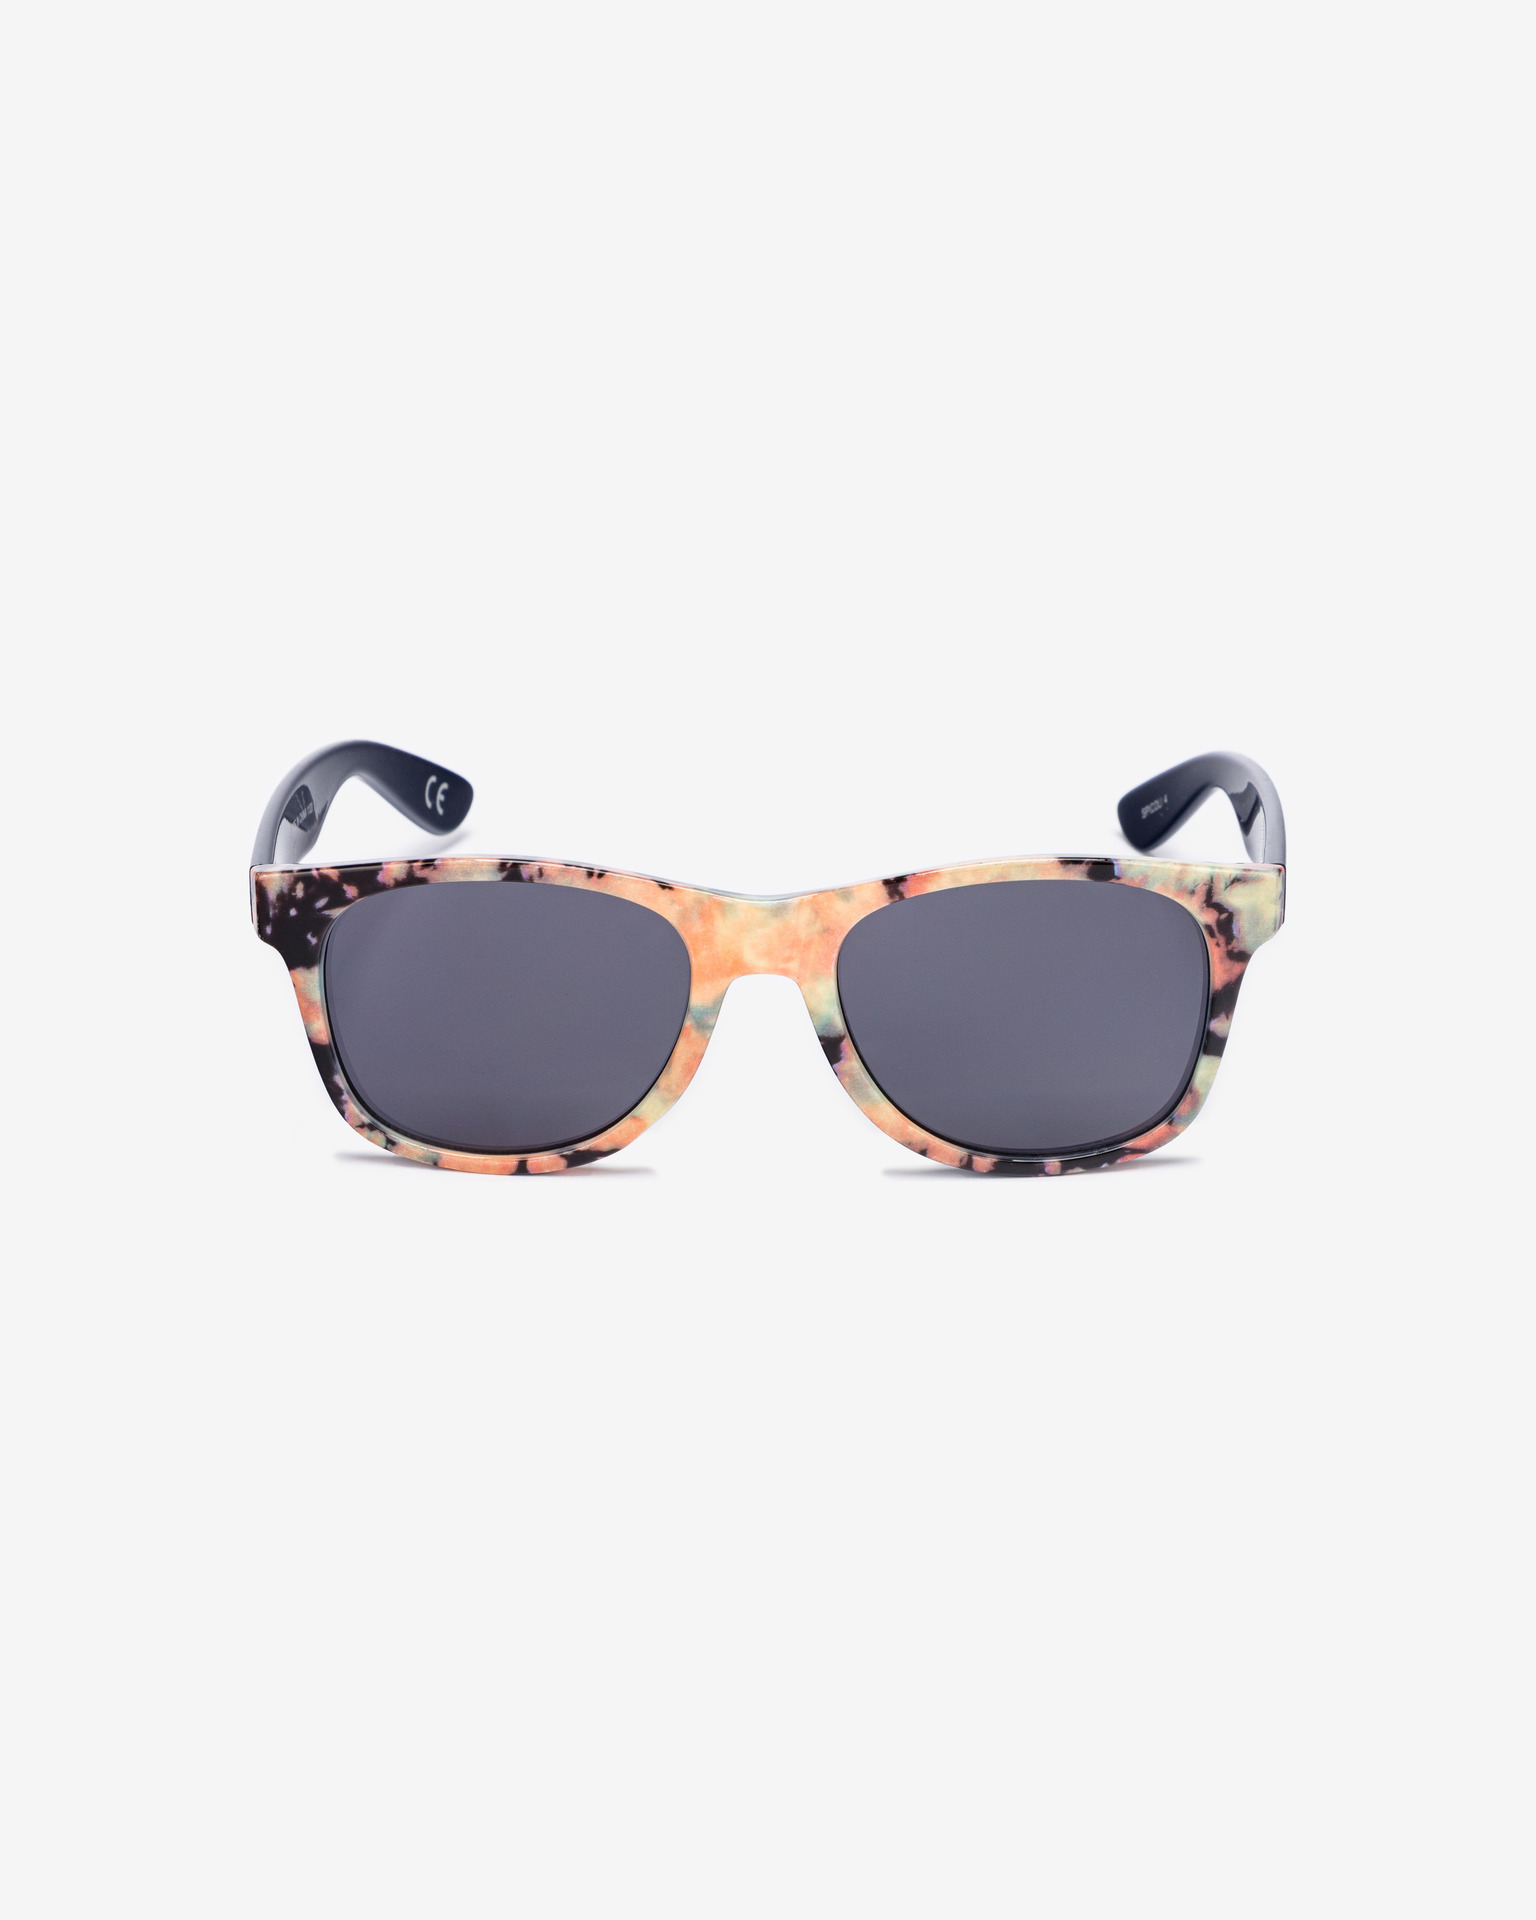 Vans - Spicoli Sunglasses Shades 4